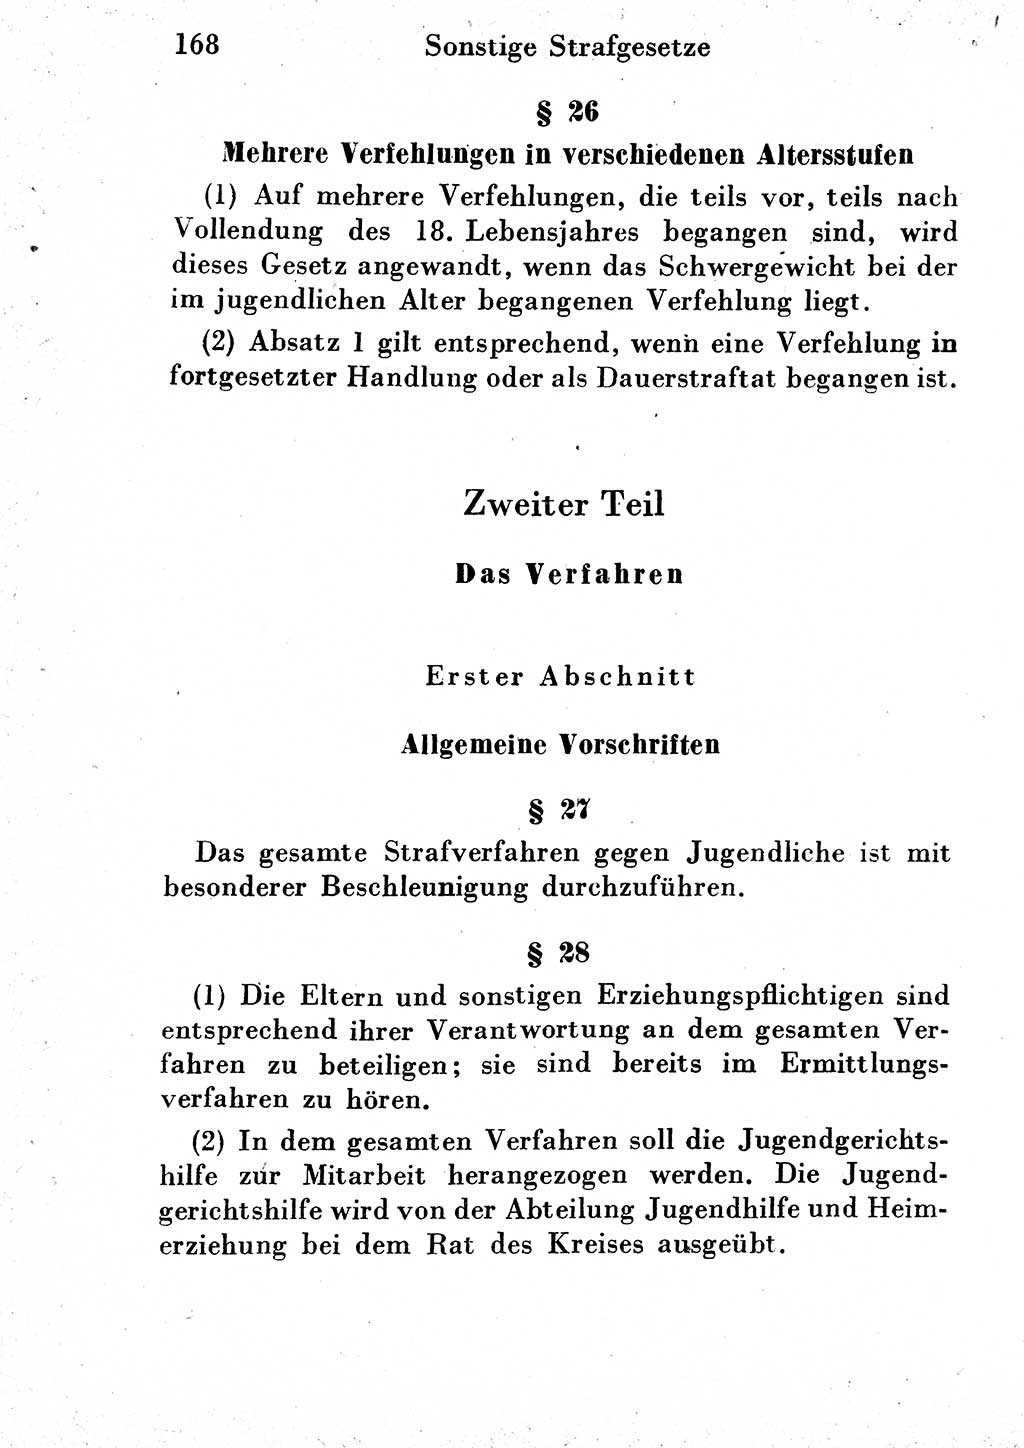 Strafgesetzbuch (StGB) und andere Strafgesetze [Deutsche Demokratische Republik (DDR)] 1954, Seite 168 (StGB Strafges. DDR 1954, S. 168)